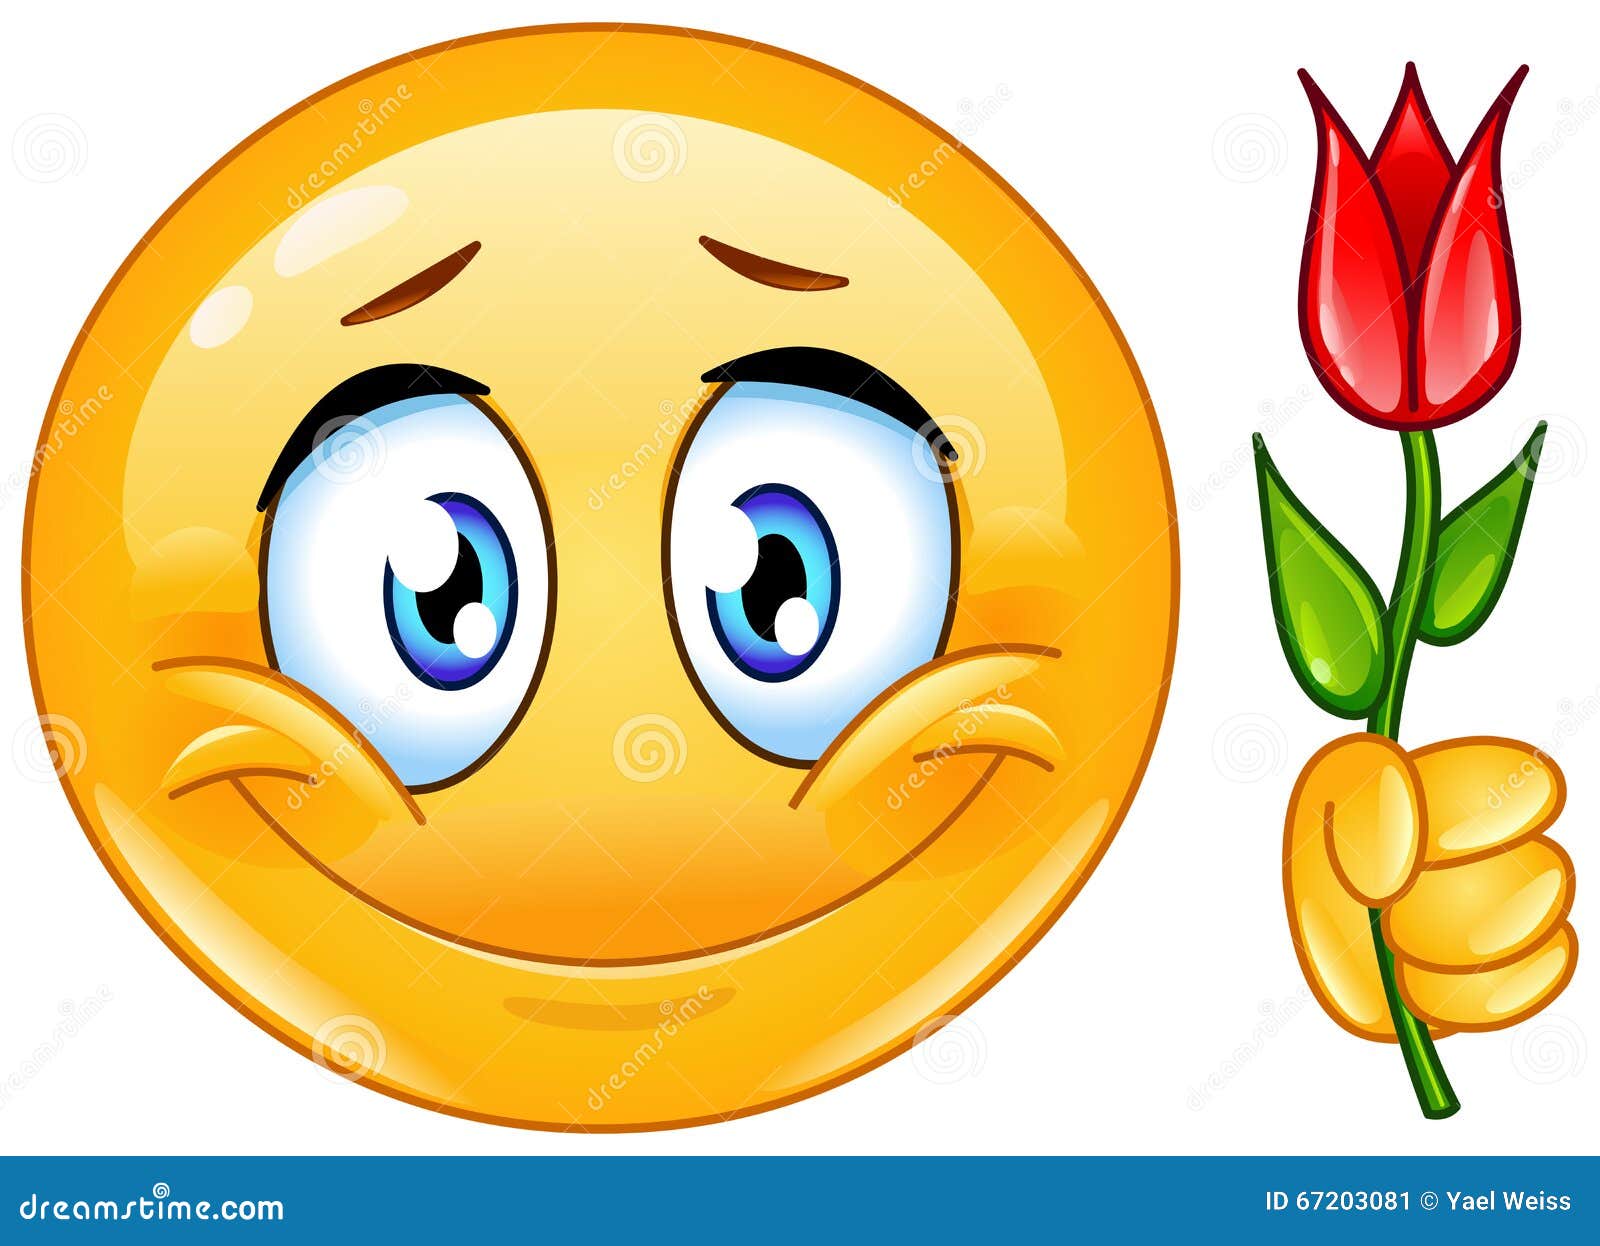 Blumenstrauß smiley mit Smileys Bedeutung